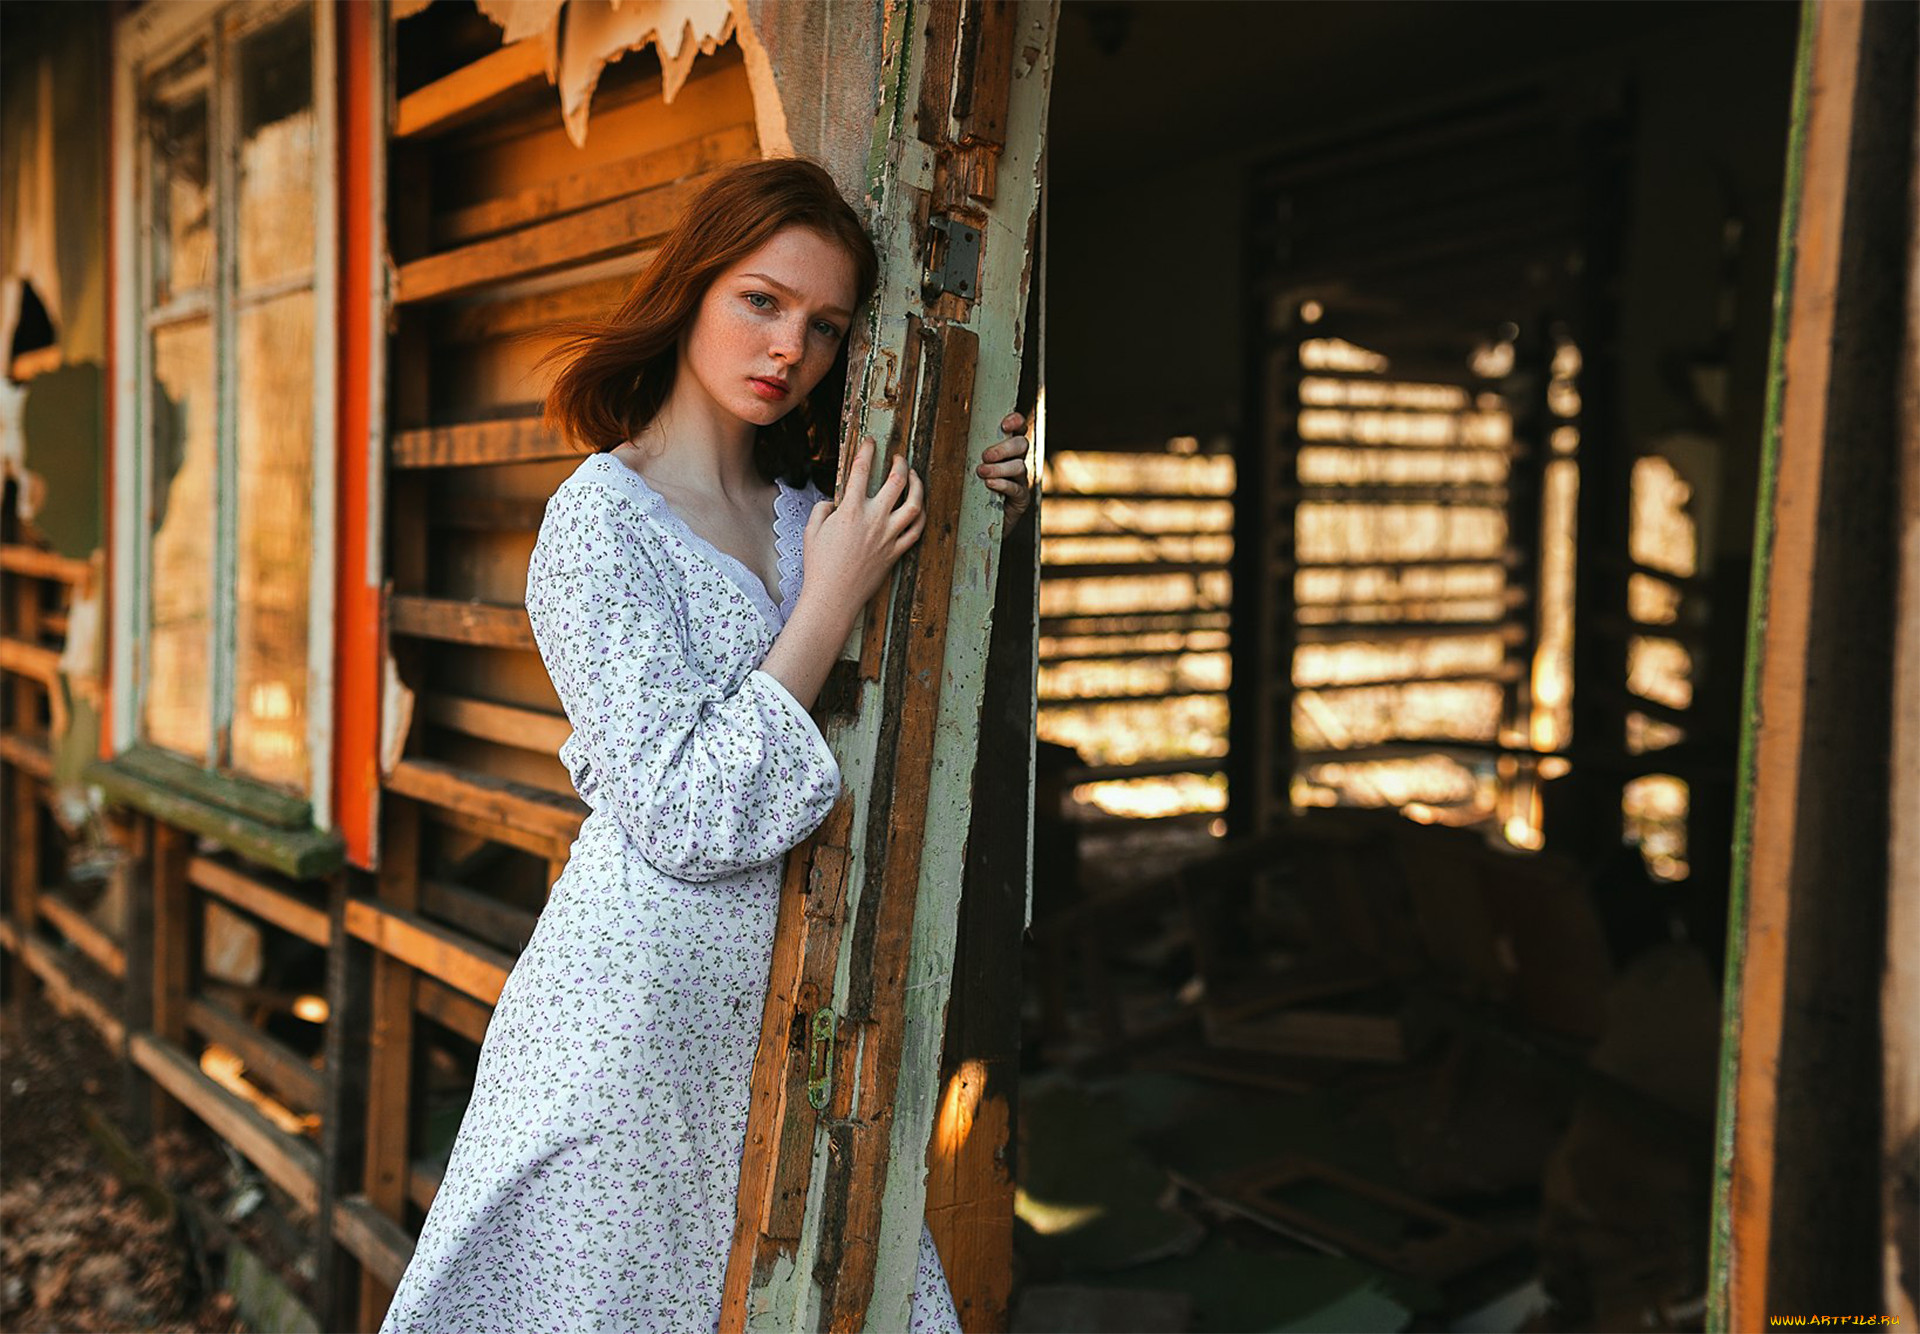 Деревенская женщина дома. Фотограф Sergey Nevzorov. Деревенские женщины. Девушки в деревне. Простая деревенская девушка.